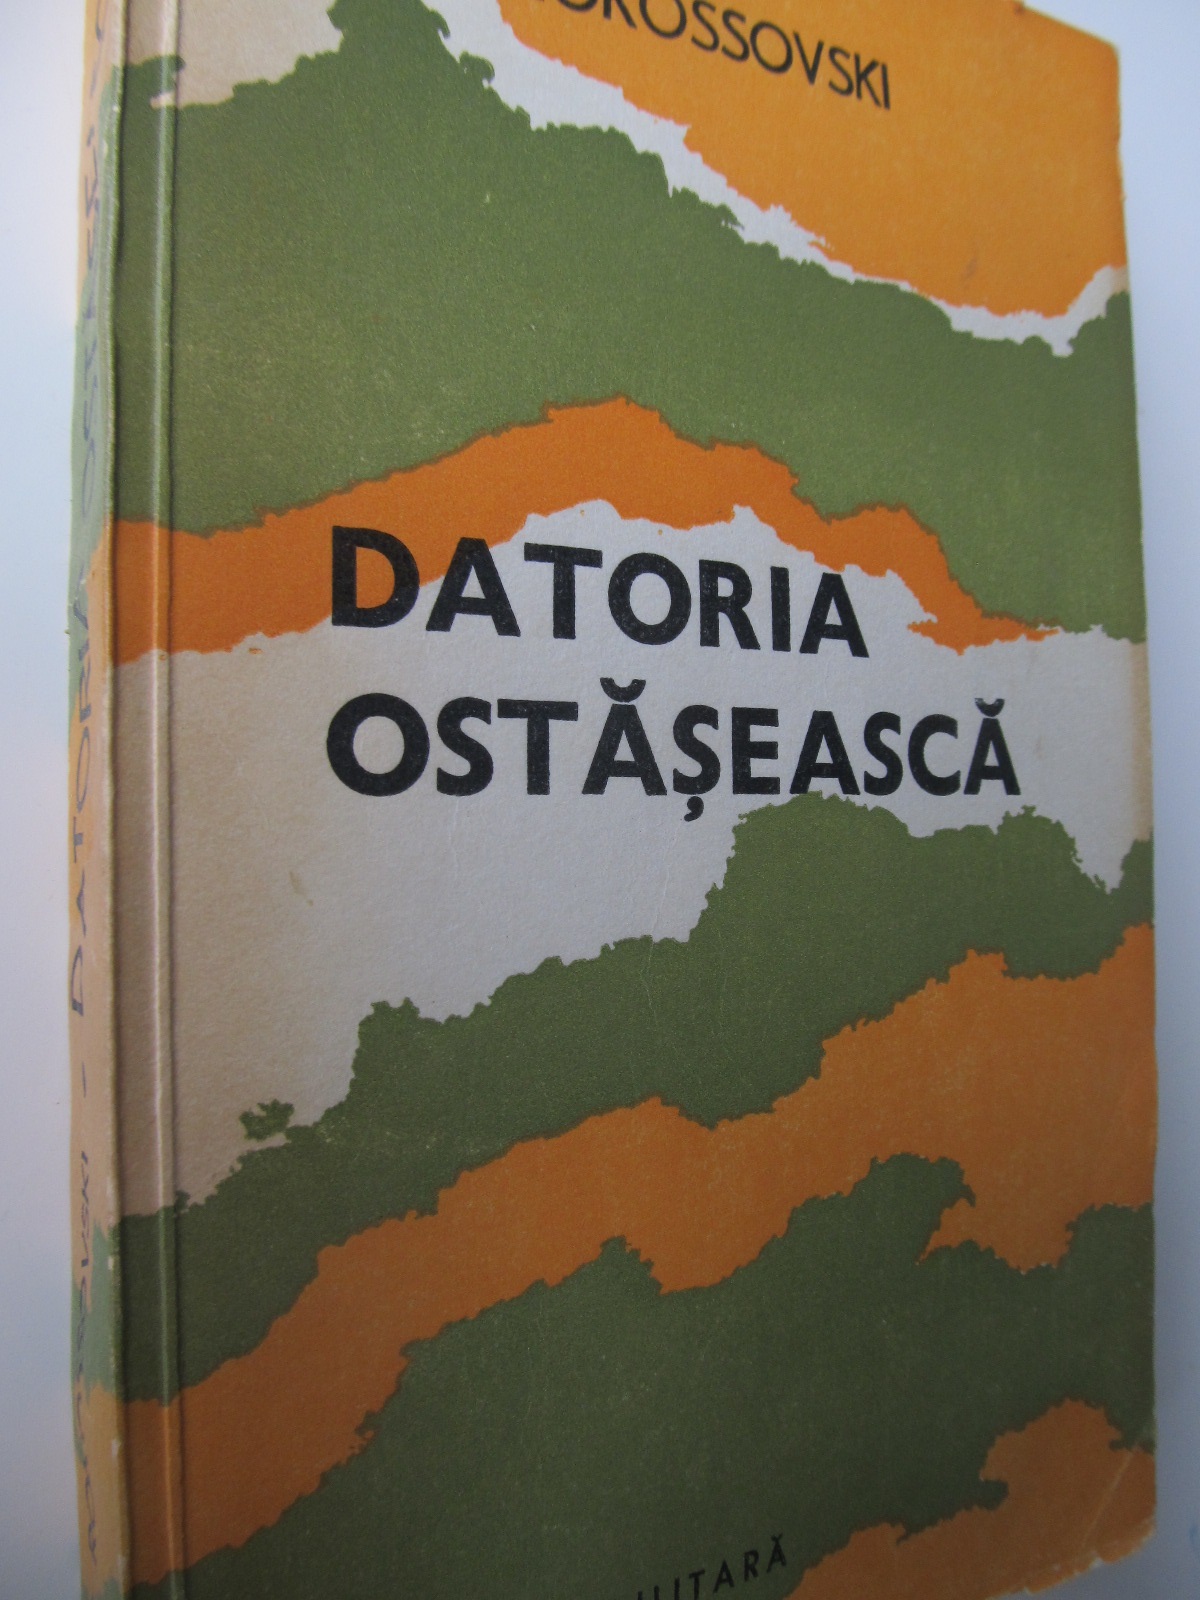 Datoria ostaseasca - K K Rokossovski | Detalii carte